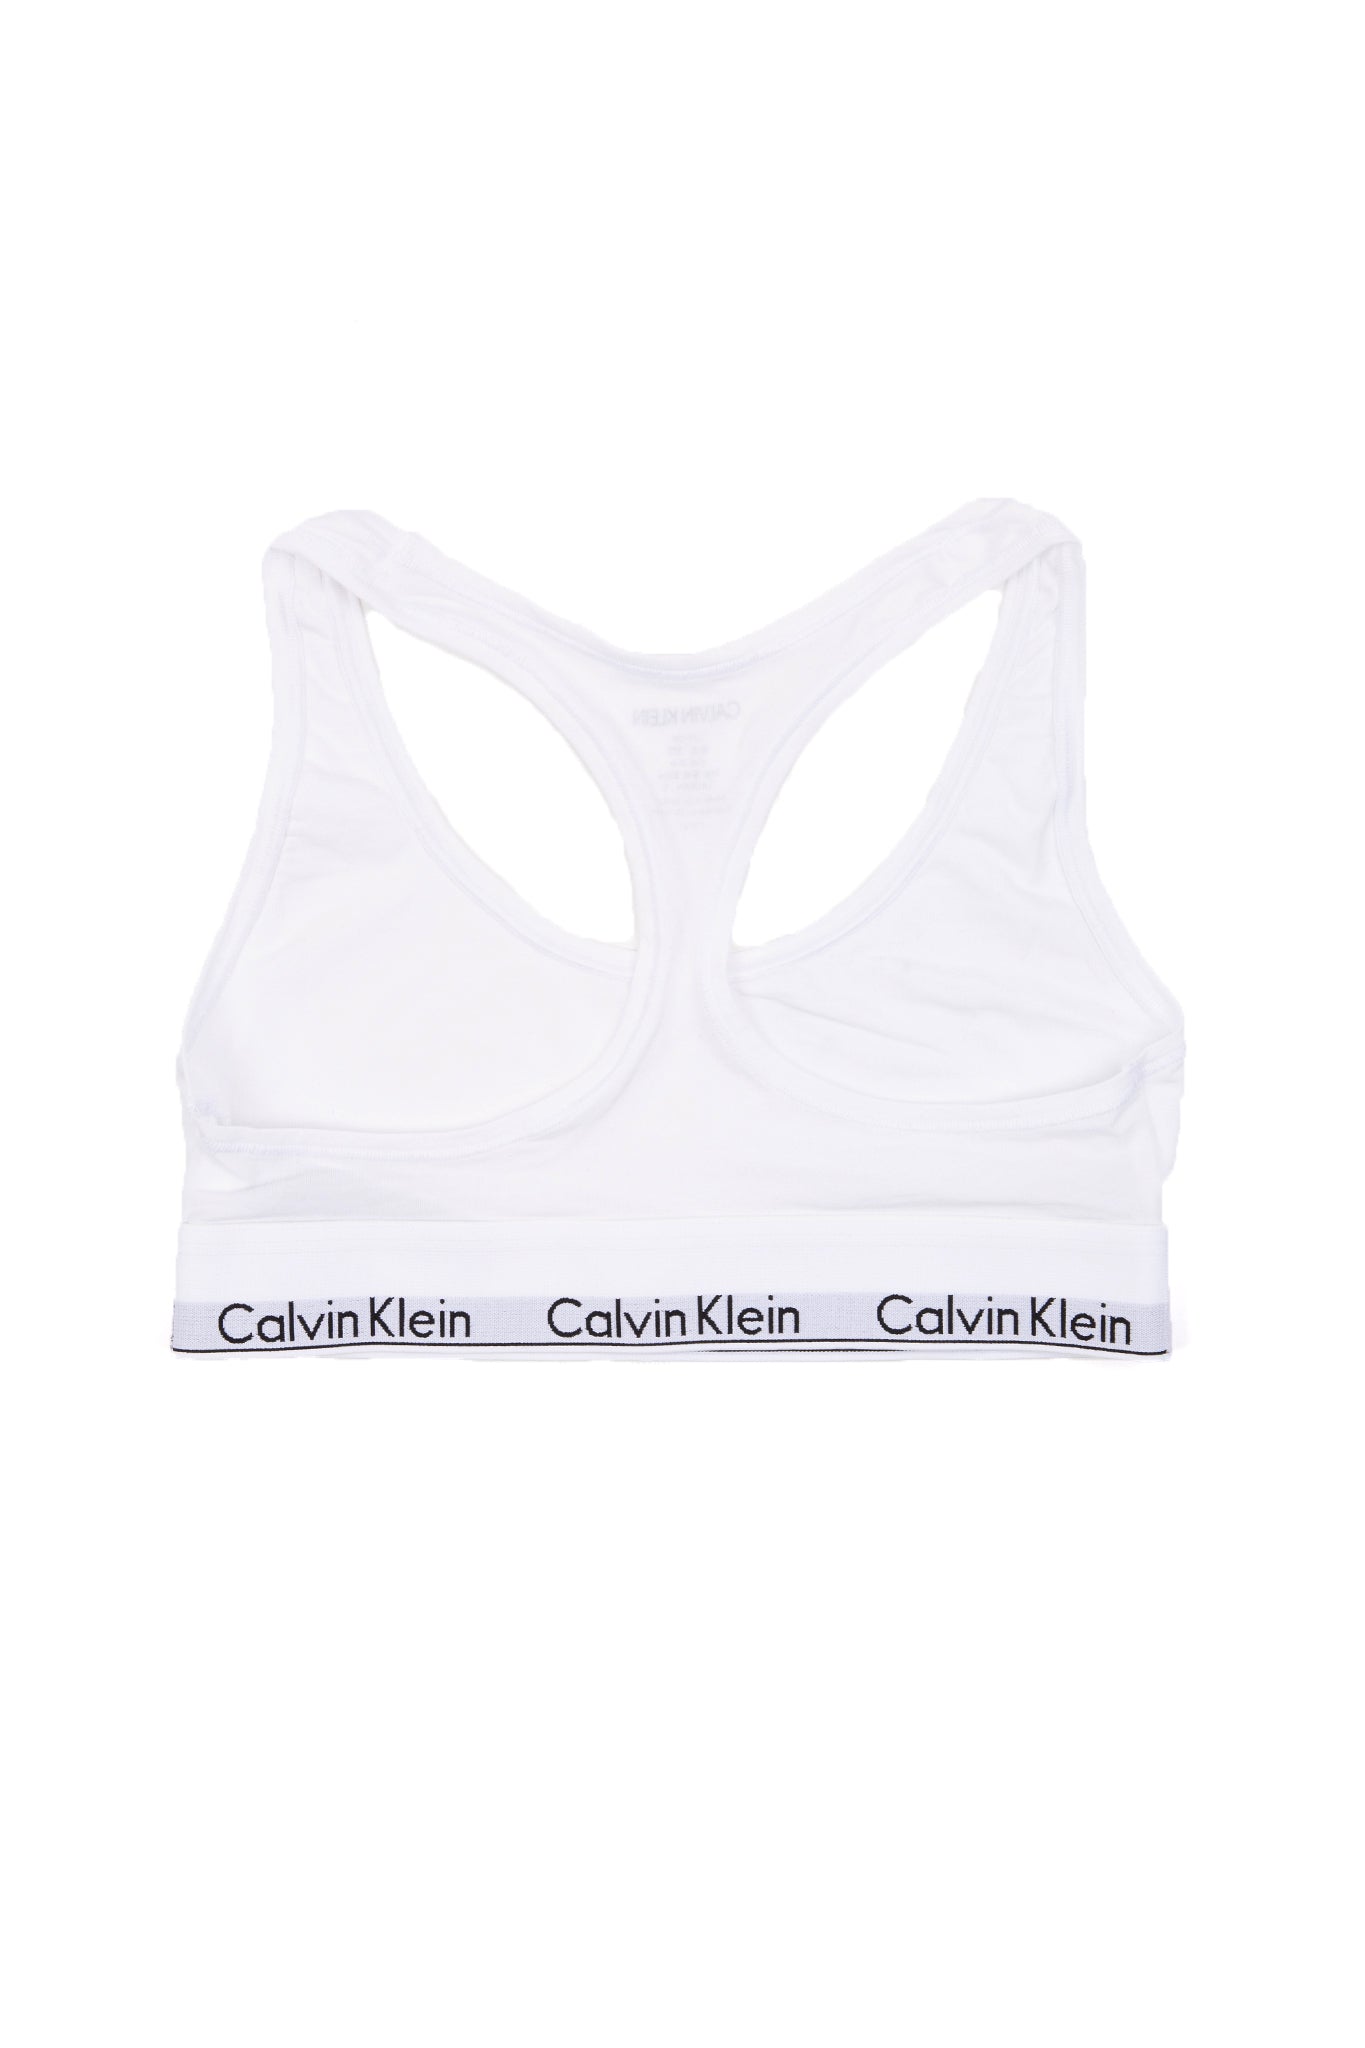 http://www.hillsdrygoods.com/cdn/shop/files/Calvin-Klein-Modern-Cotton-Unlined-Bralette-White-2.jpg?v=1687559017